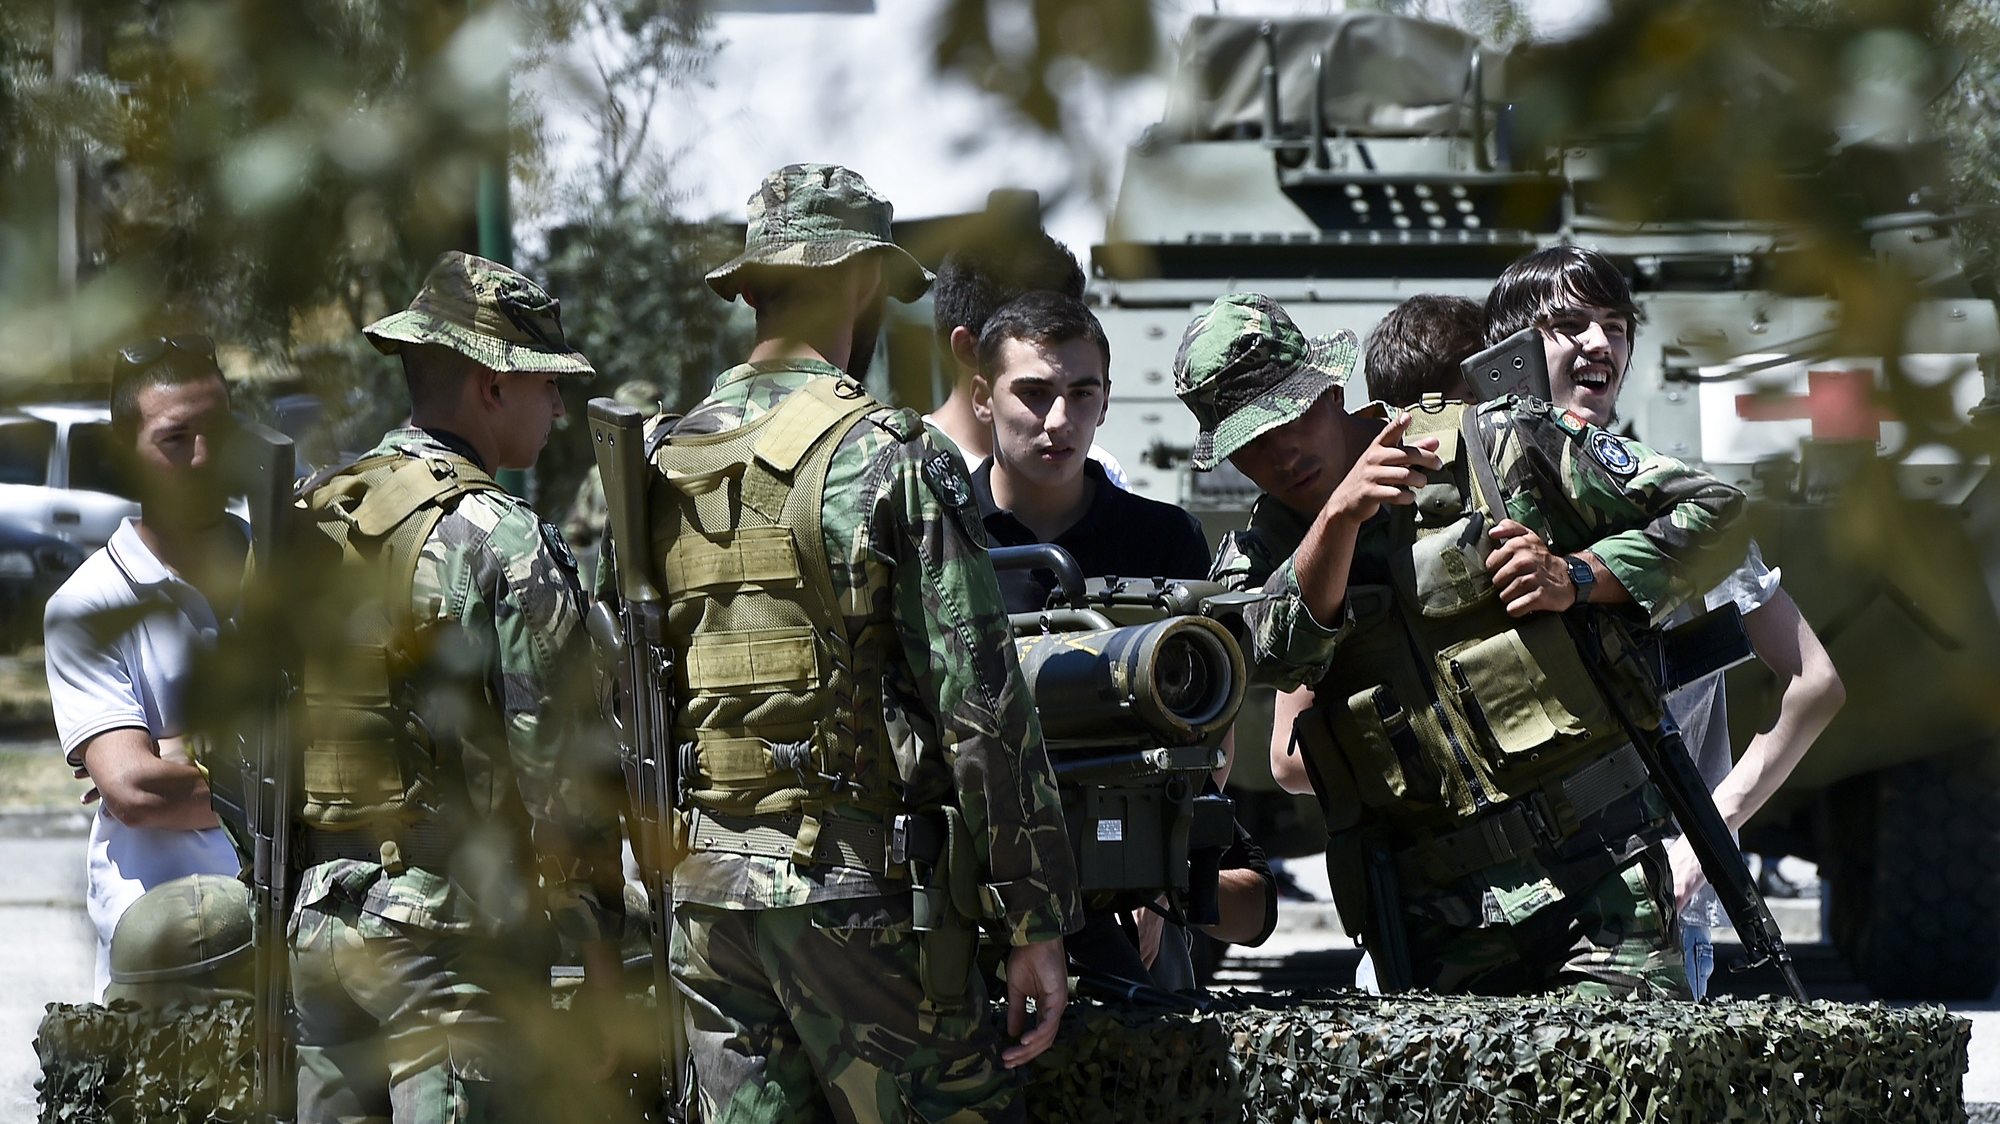 Um grupo de jovens observa alguma artilharia militar durante as atividades do Dia da Defesa Nacional no Regimento de Infantaria 14, em Viseu, 25 de Junho de 2016. NUNO ANDRÉ FERREIRA/LUSA.